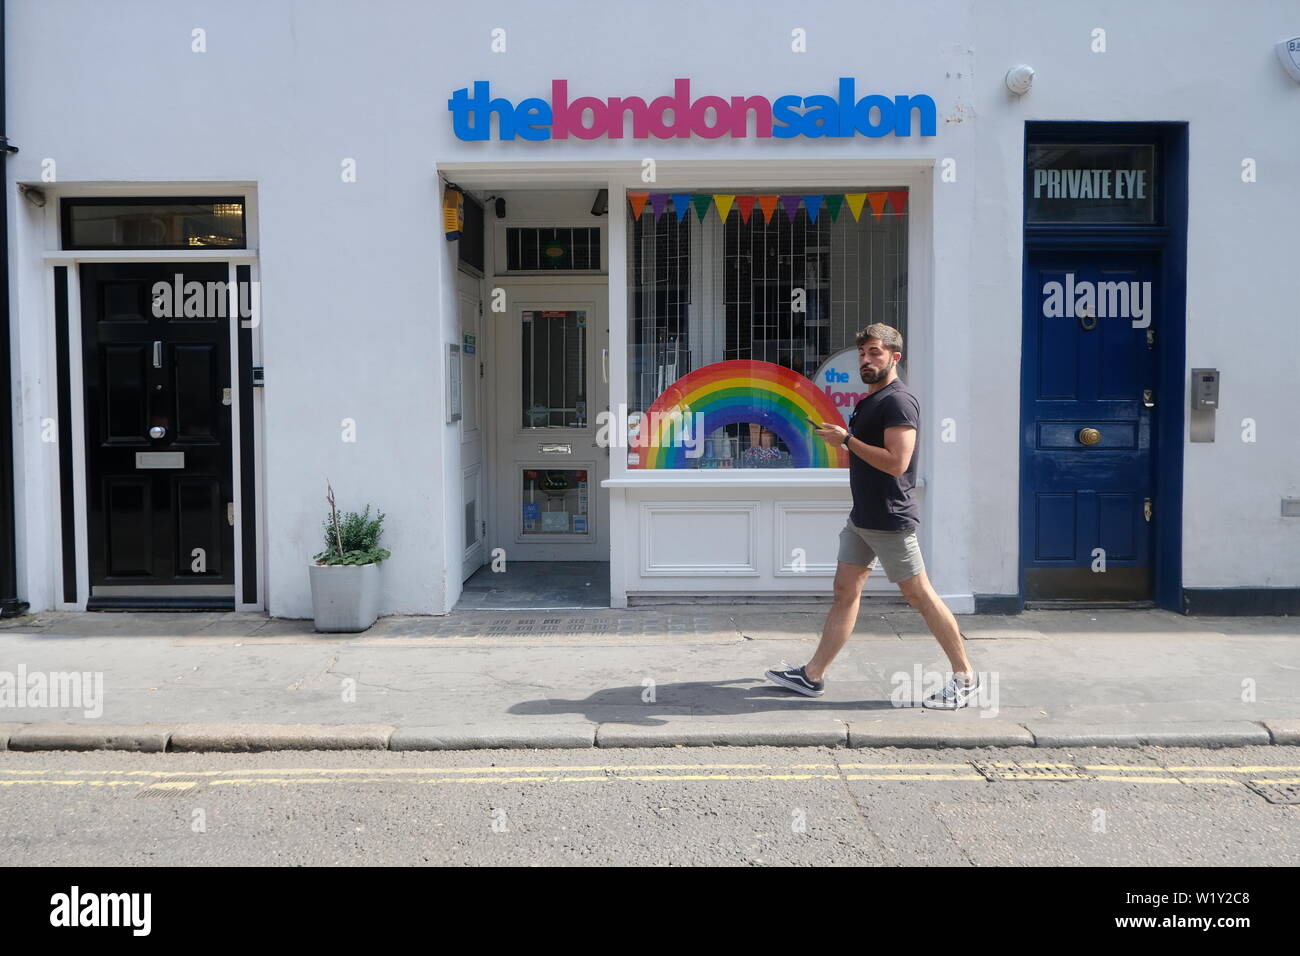 Der London Salon, Soho Shop Front mit Passanten und Regenbogen im Fenster Stockfoto